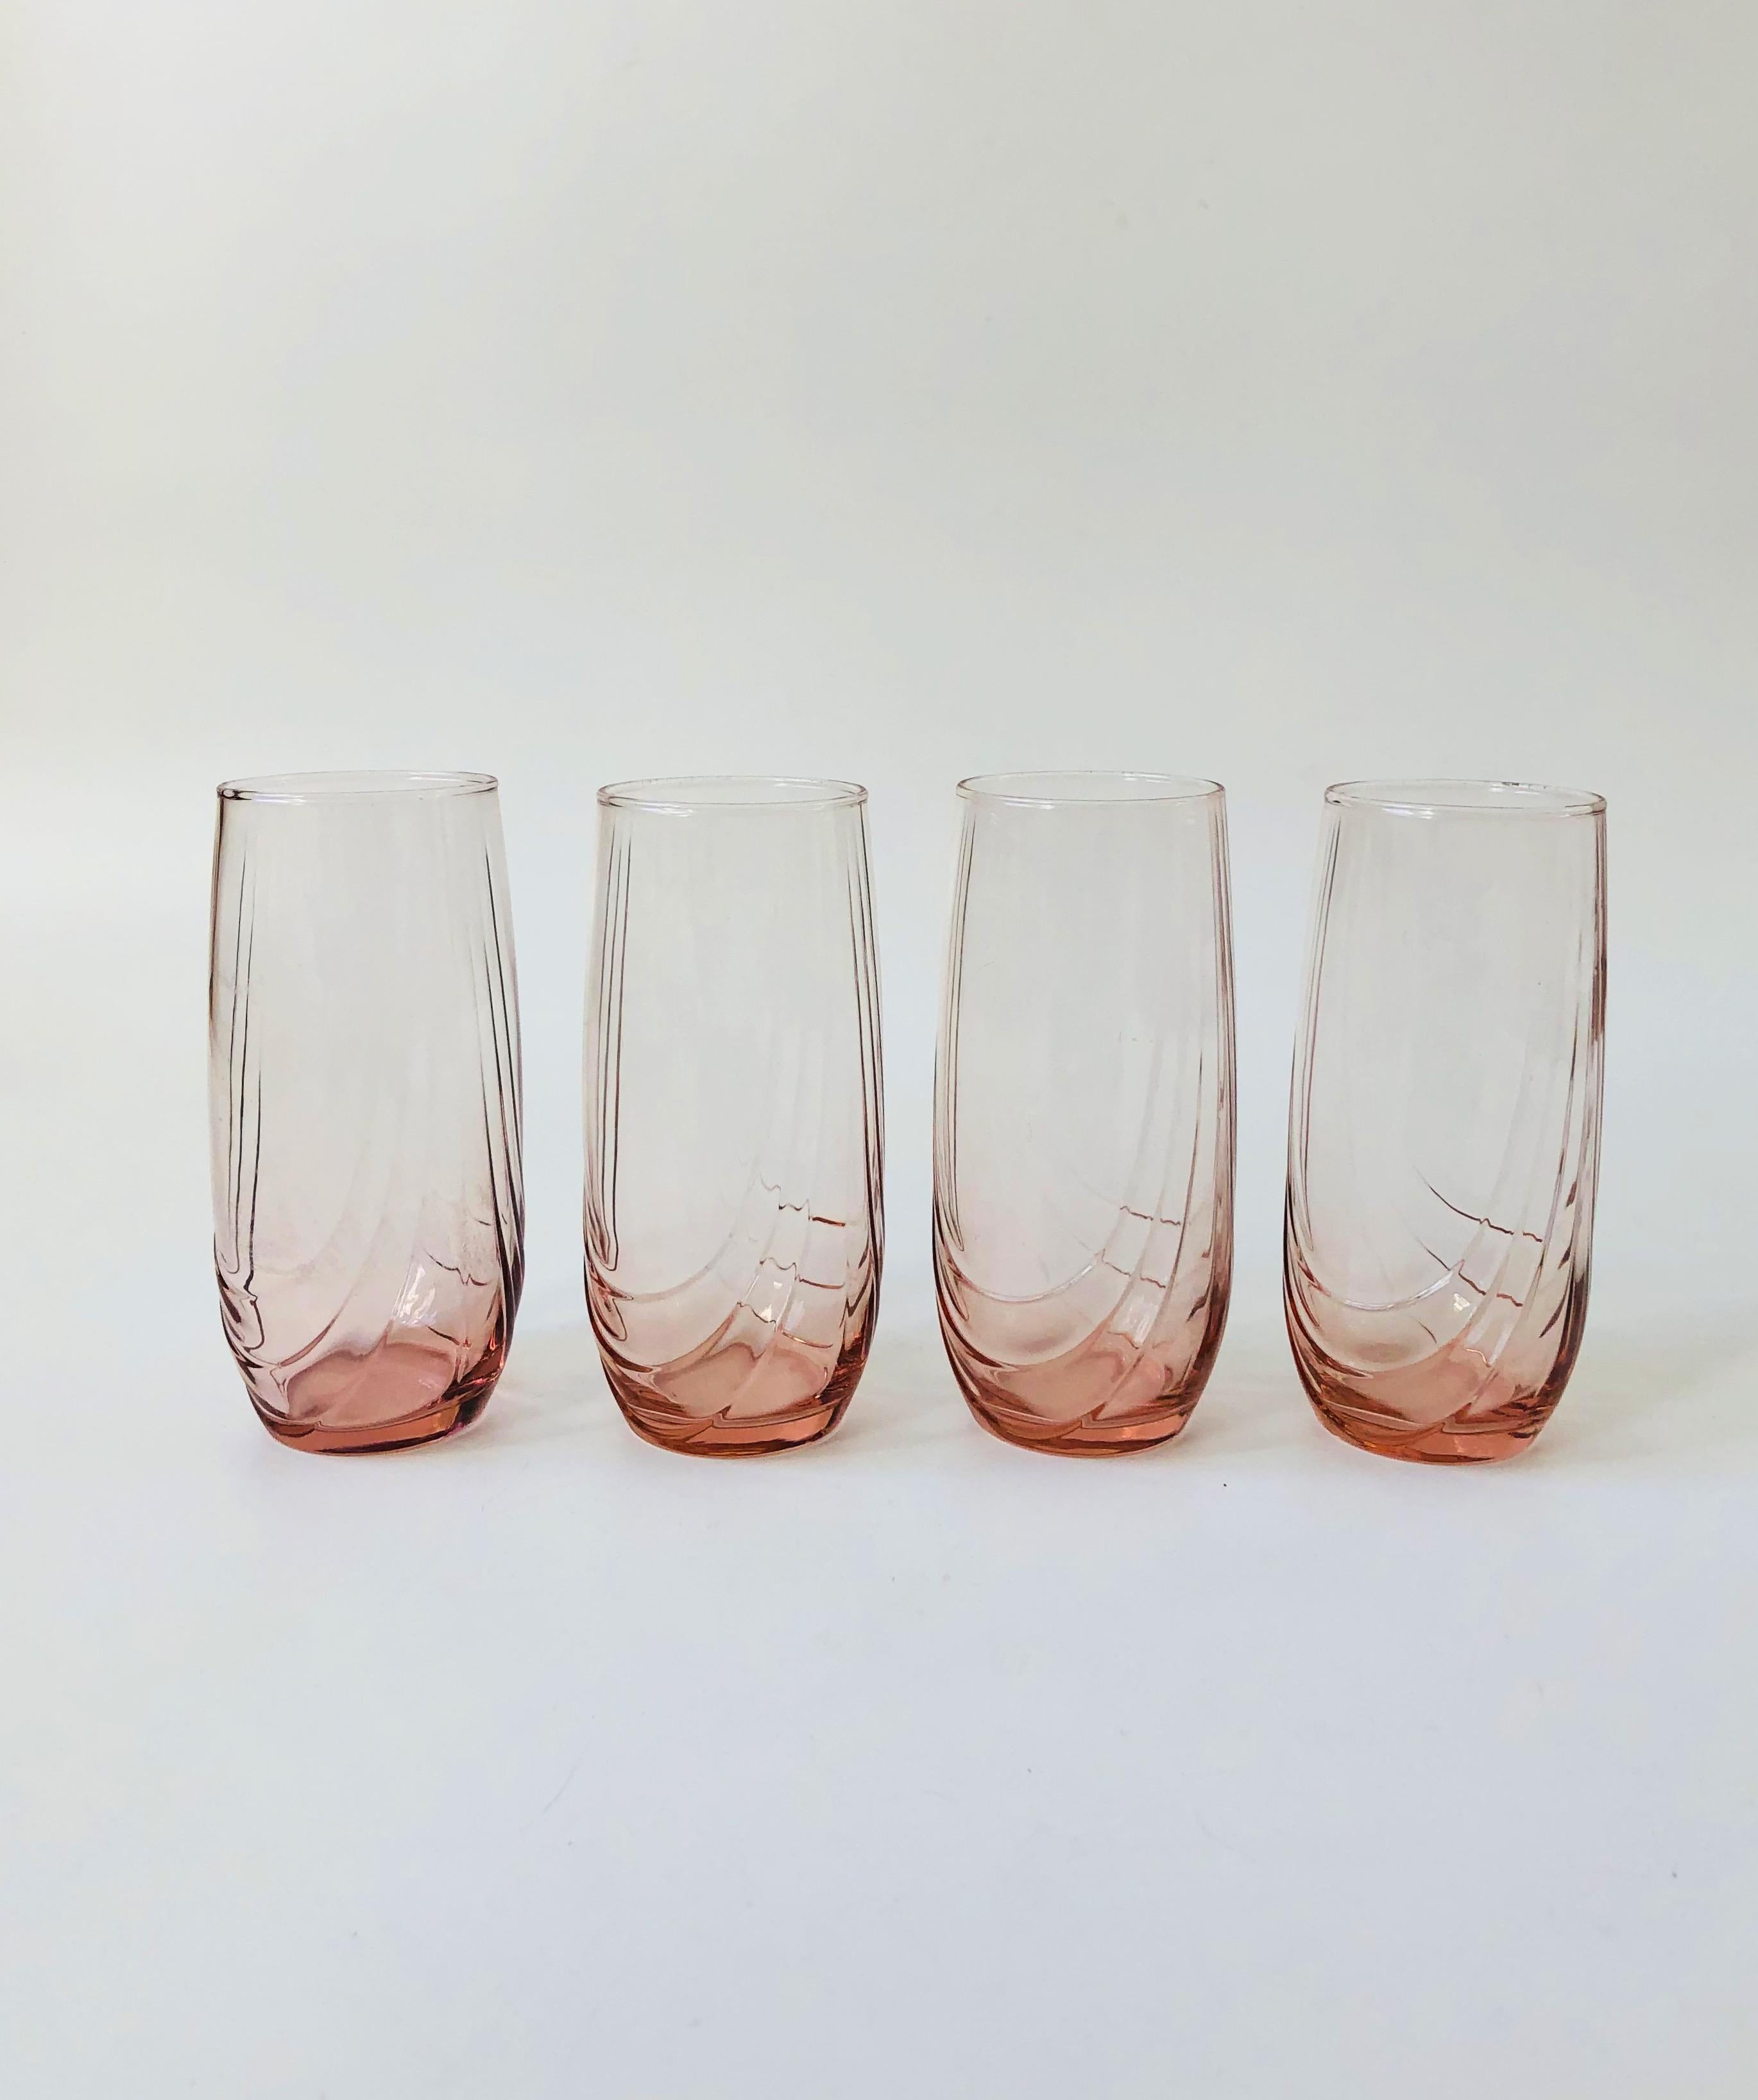 Un ensemble de 4 gobelets highball vintage des années 1980. Magnifique couleur rose pâle avec un détail gaufré unique sur les côtés. Parfait pour les cocktails ou les verres à eau de tous les jours.
  